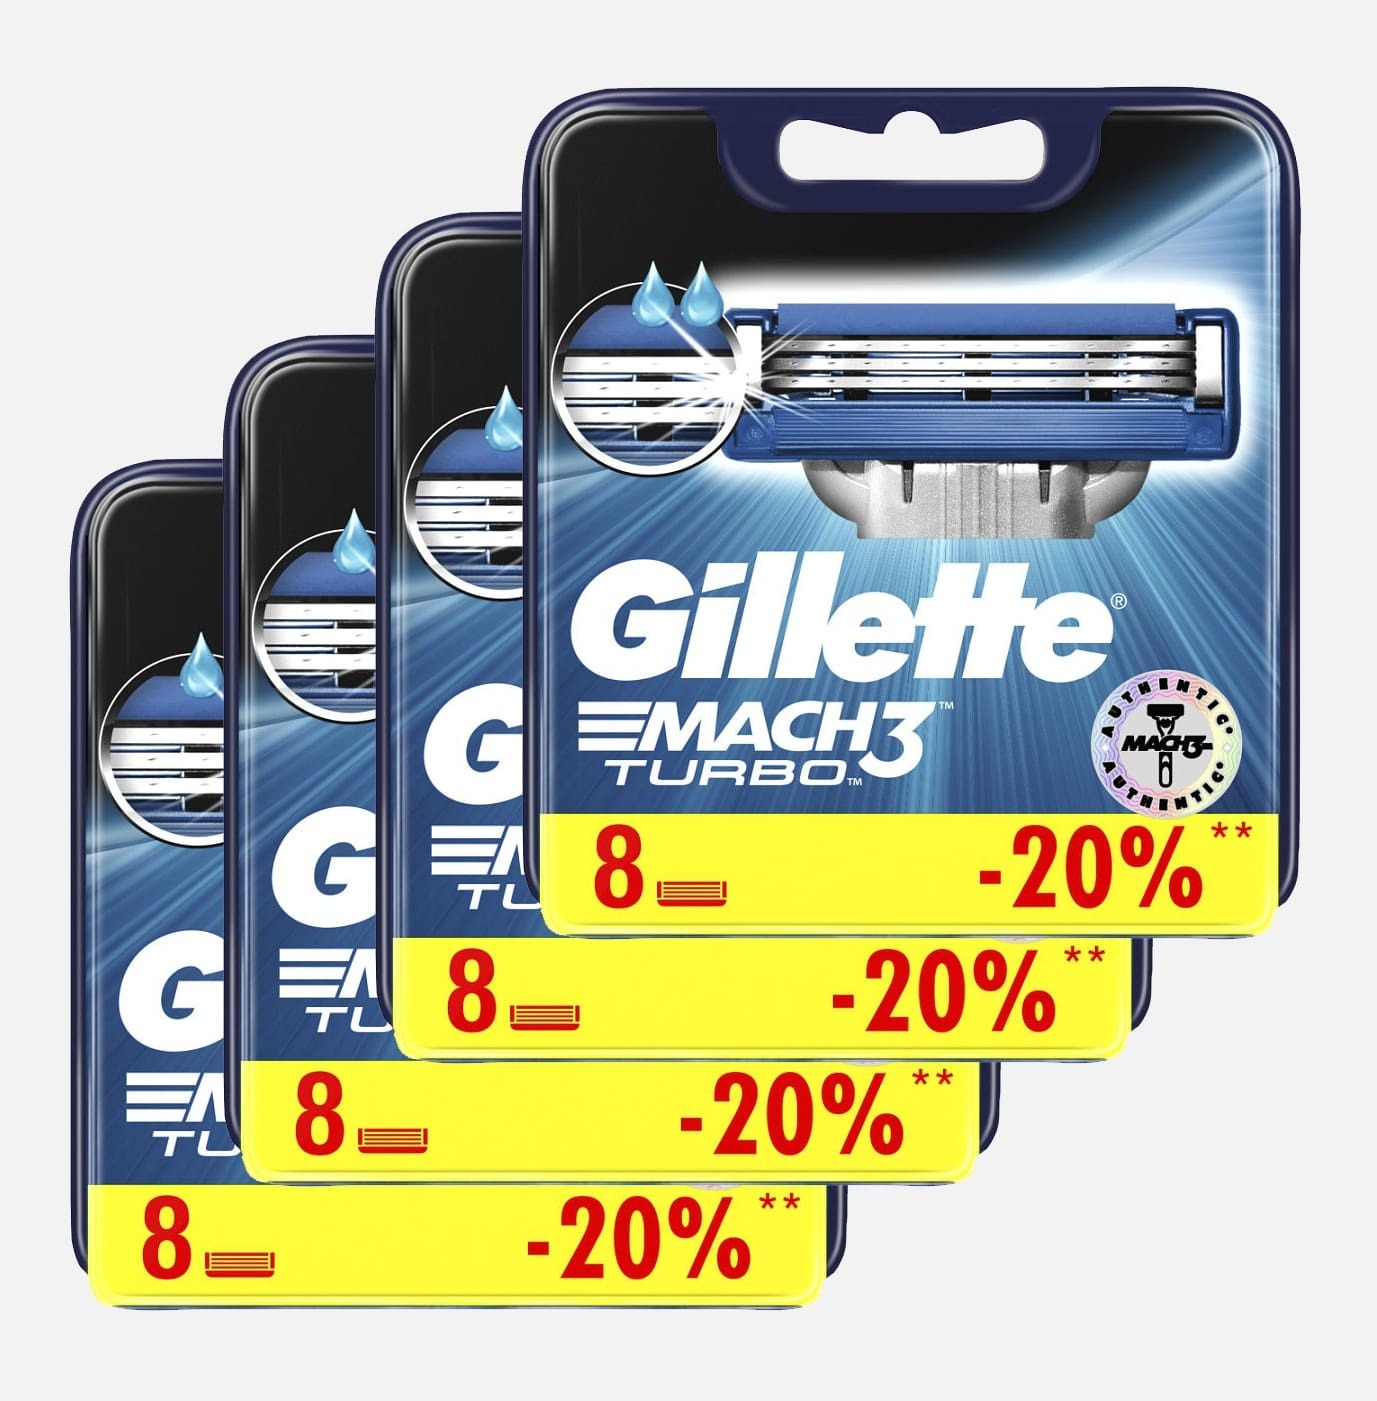 Сменные кассеты для бритья Gillette MACH3 Turbo (32шт). Цена с учетом скидки 9%.